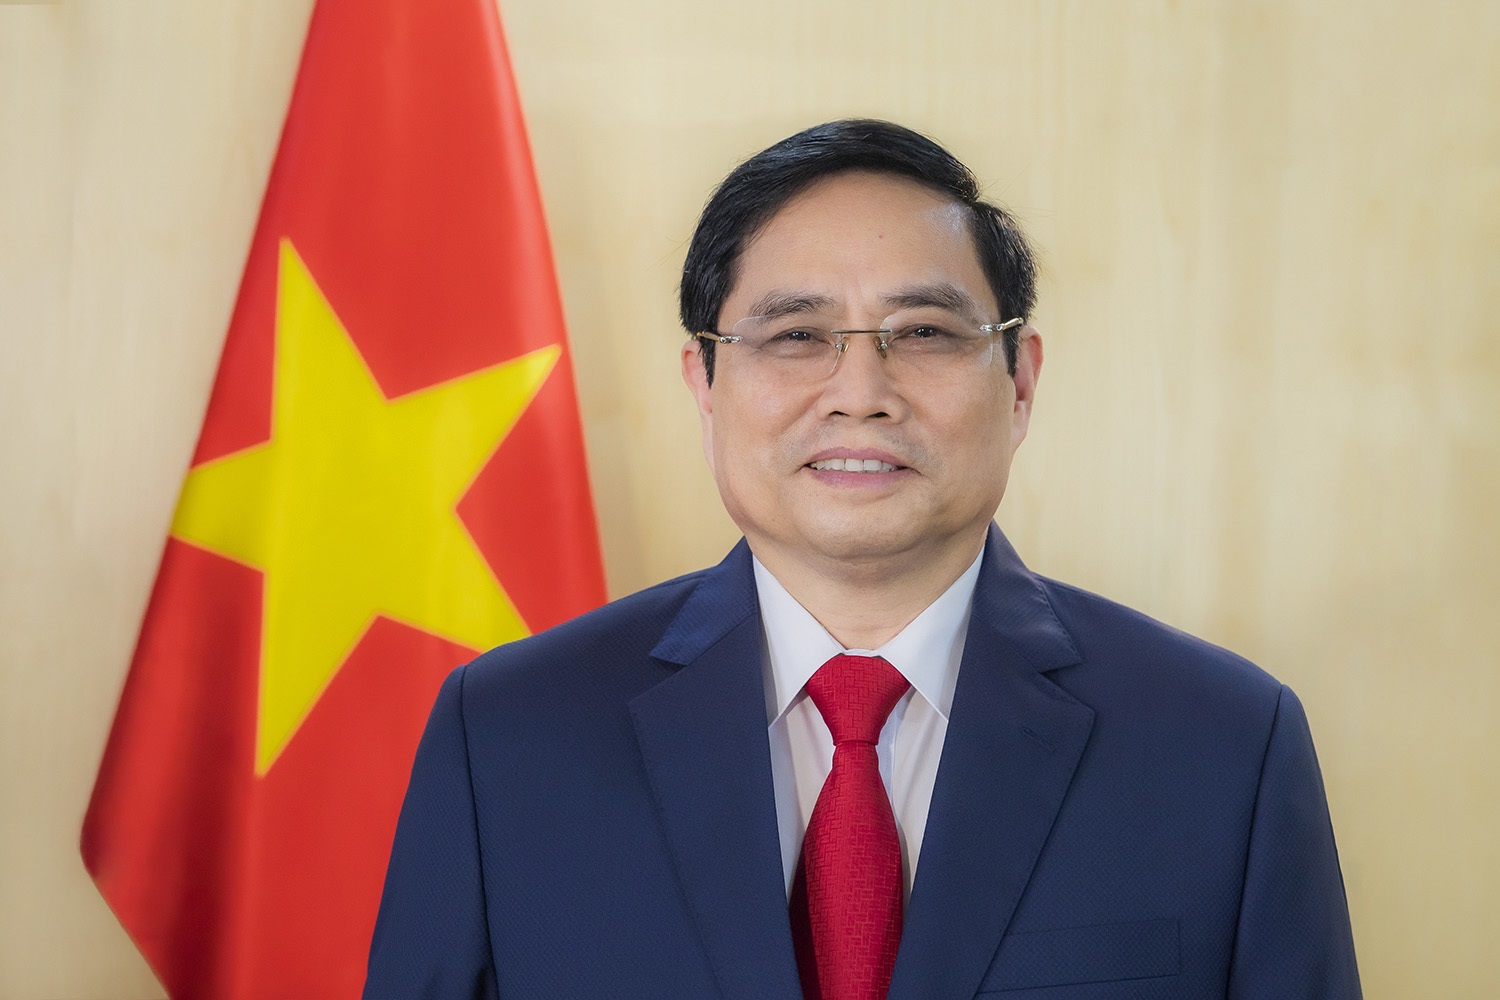 Thủ tướng Chính phủ Phạm Minh Chính gửi thư chúc mừng cán bộ, công chức, viên chức, người lao động ngành Công Thương nhân kỷ niệm 70 năm Ngày truyền thống